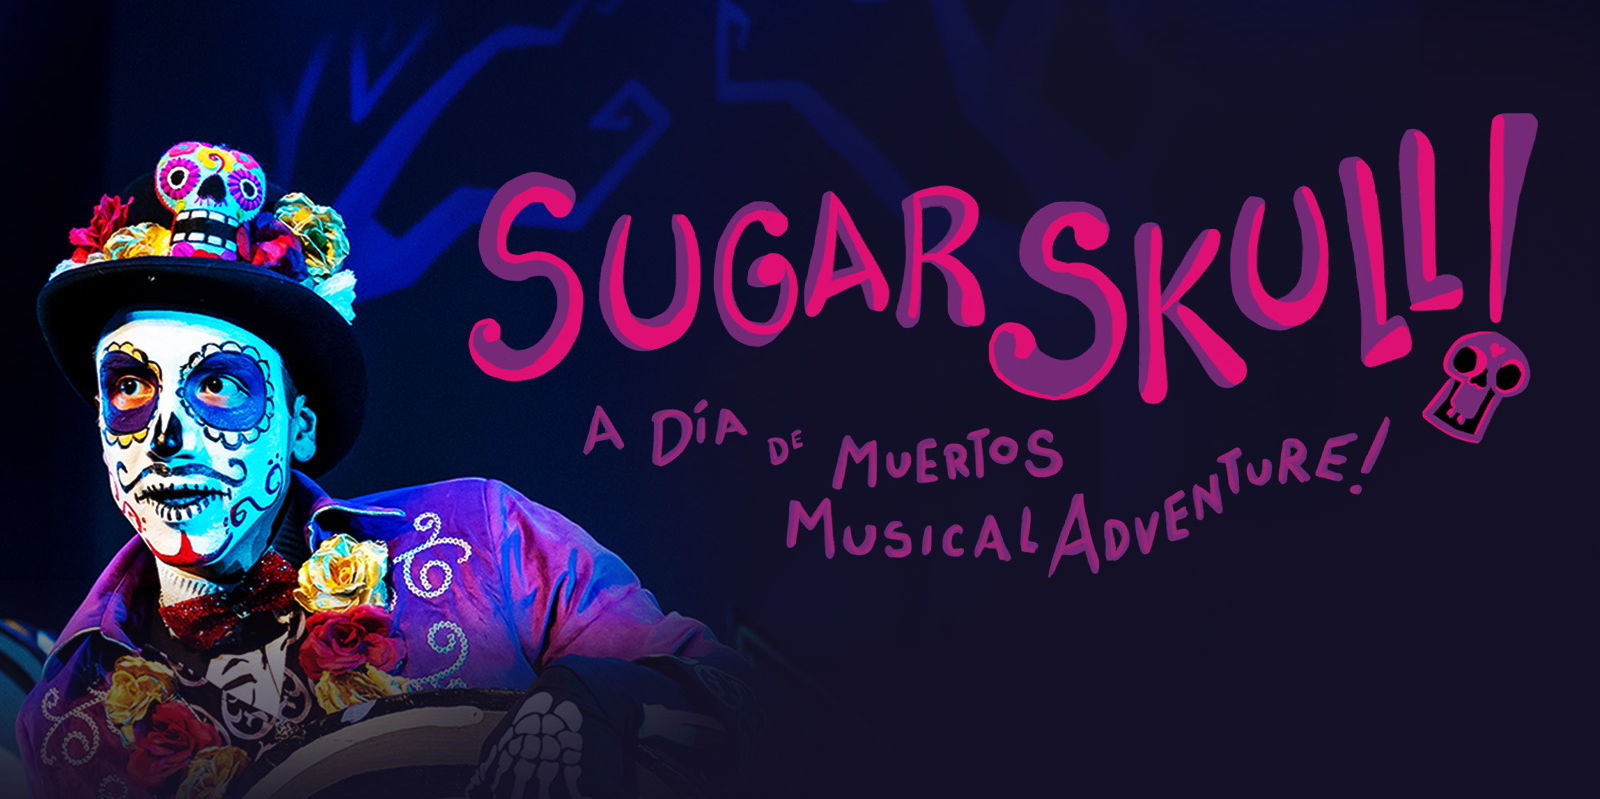 SUGAR SKULL! A Día de Muertos Musical Adventure promotional image